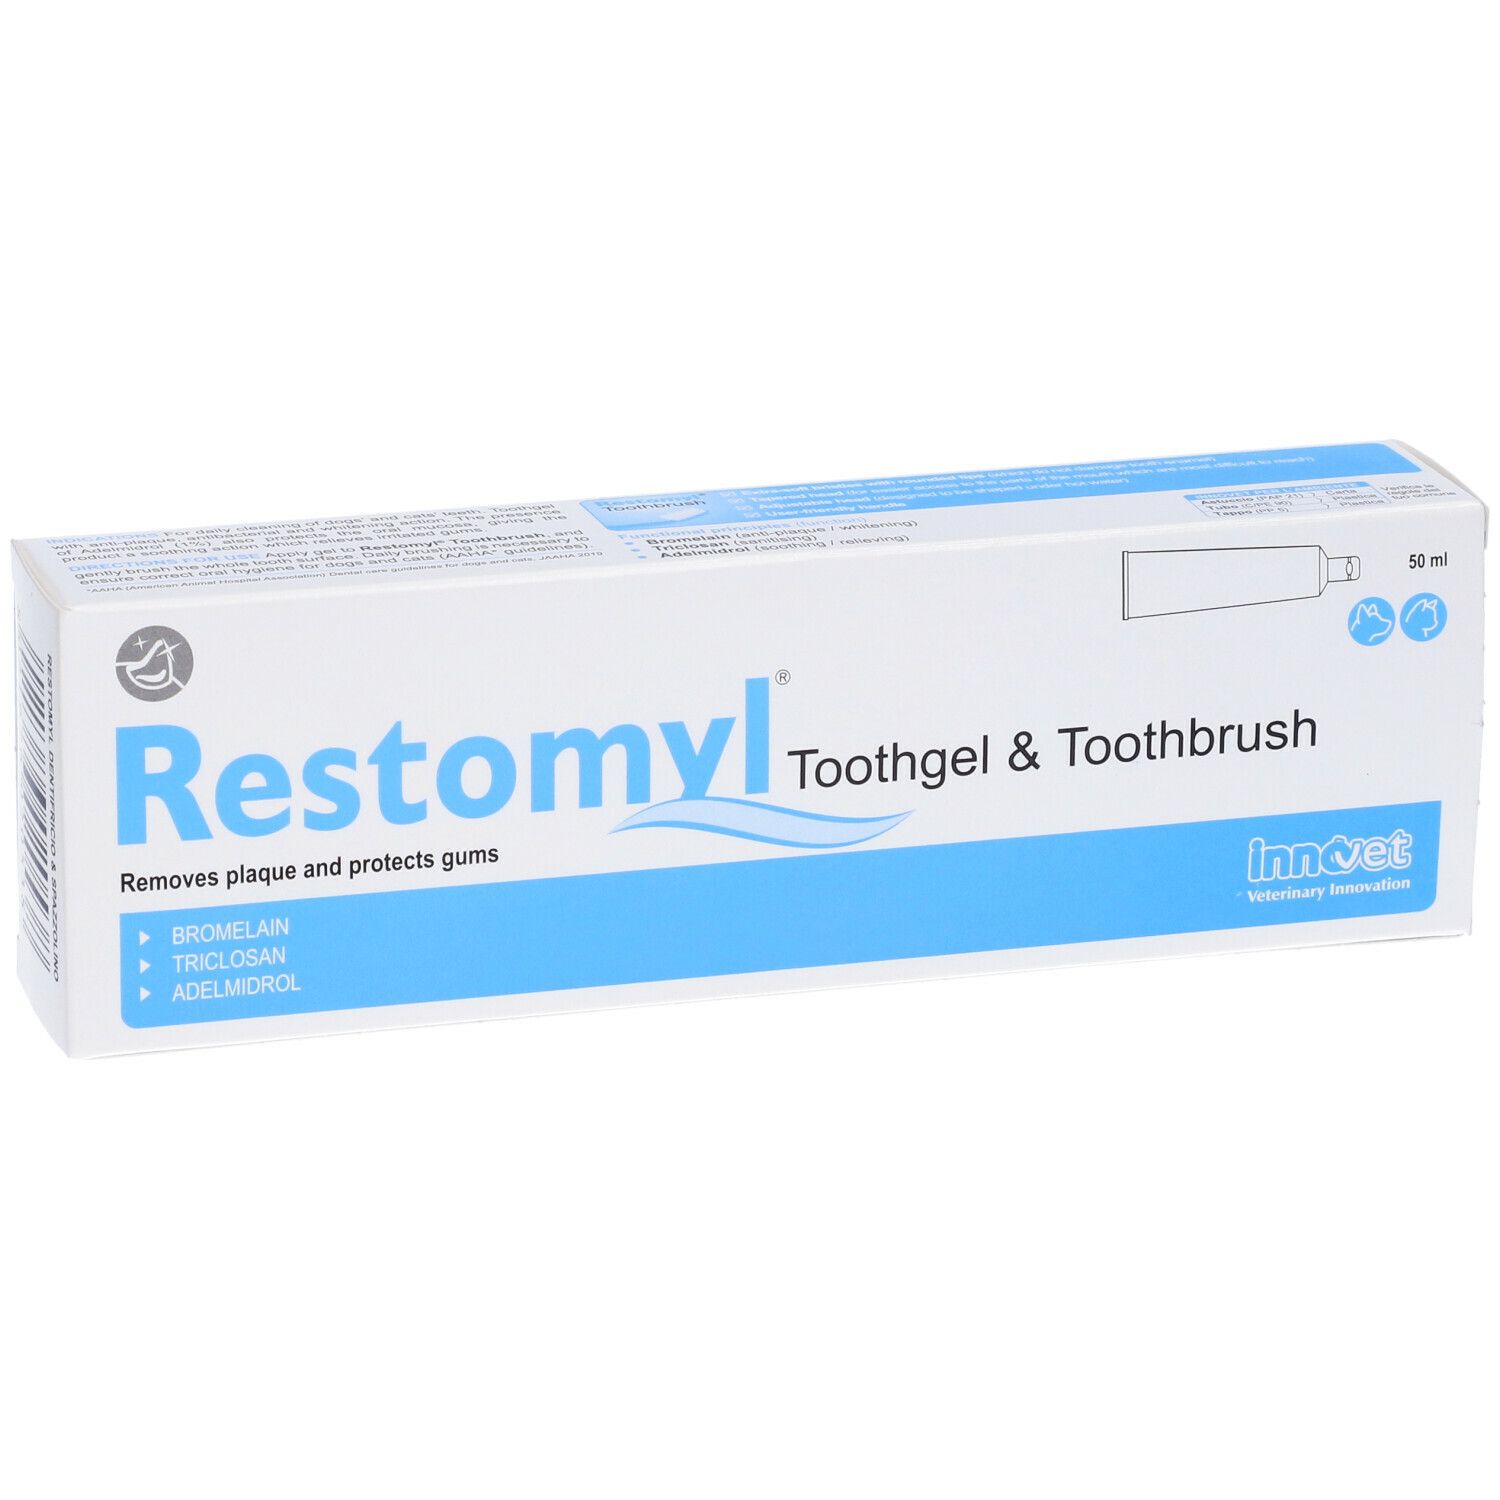 Restomyl Dent&Spazz Extrasoft